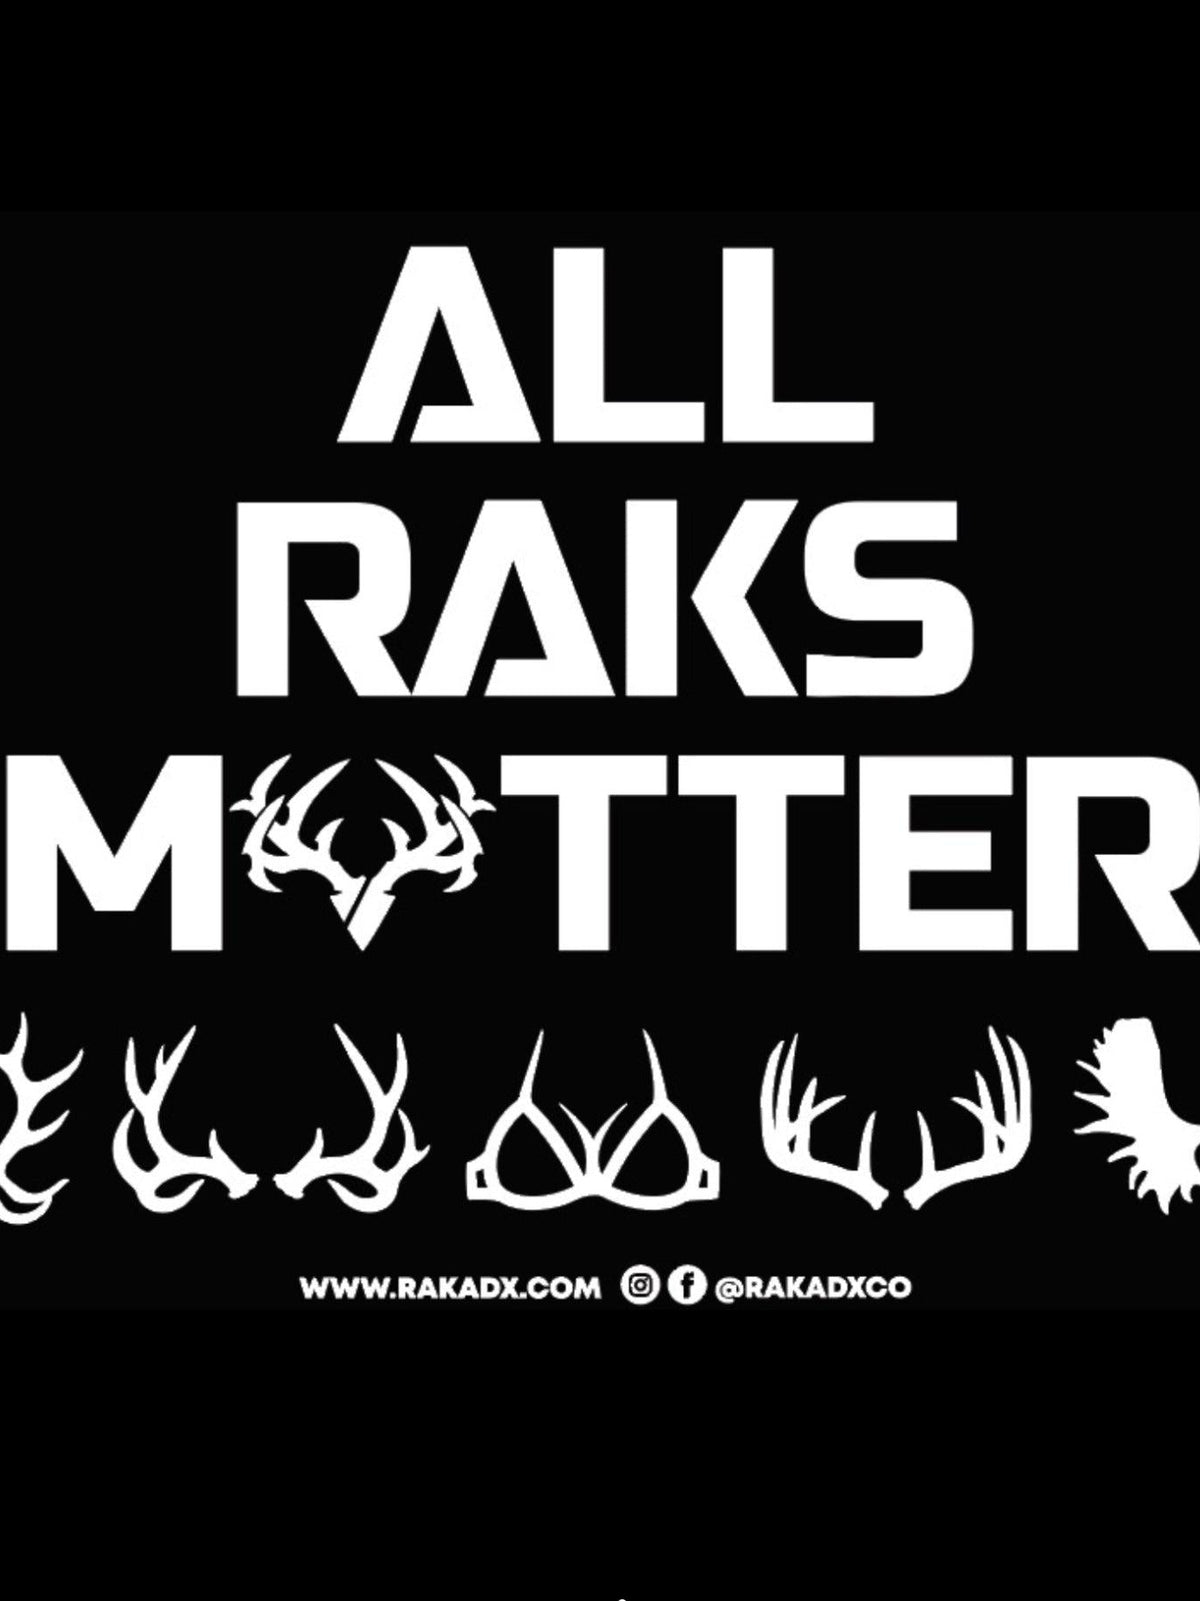 All Raks Matter ™ Flag - 2 Sizes